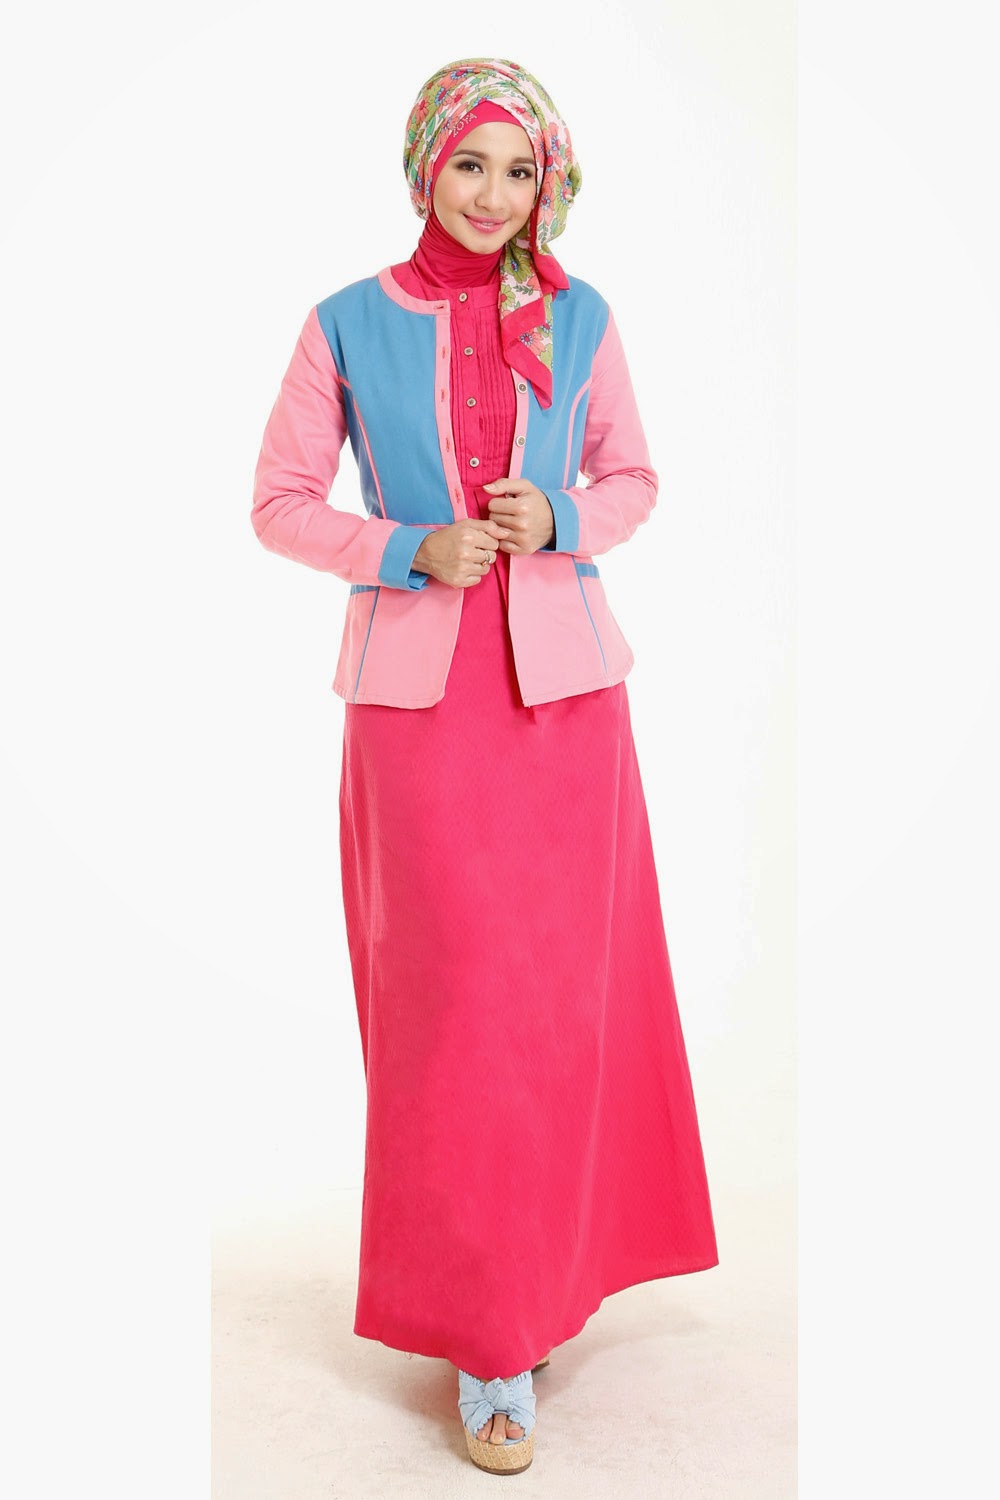 23 Contoh Model Baju Muslim Artis Masa Kini Kumpulan Model 